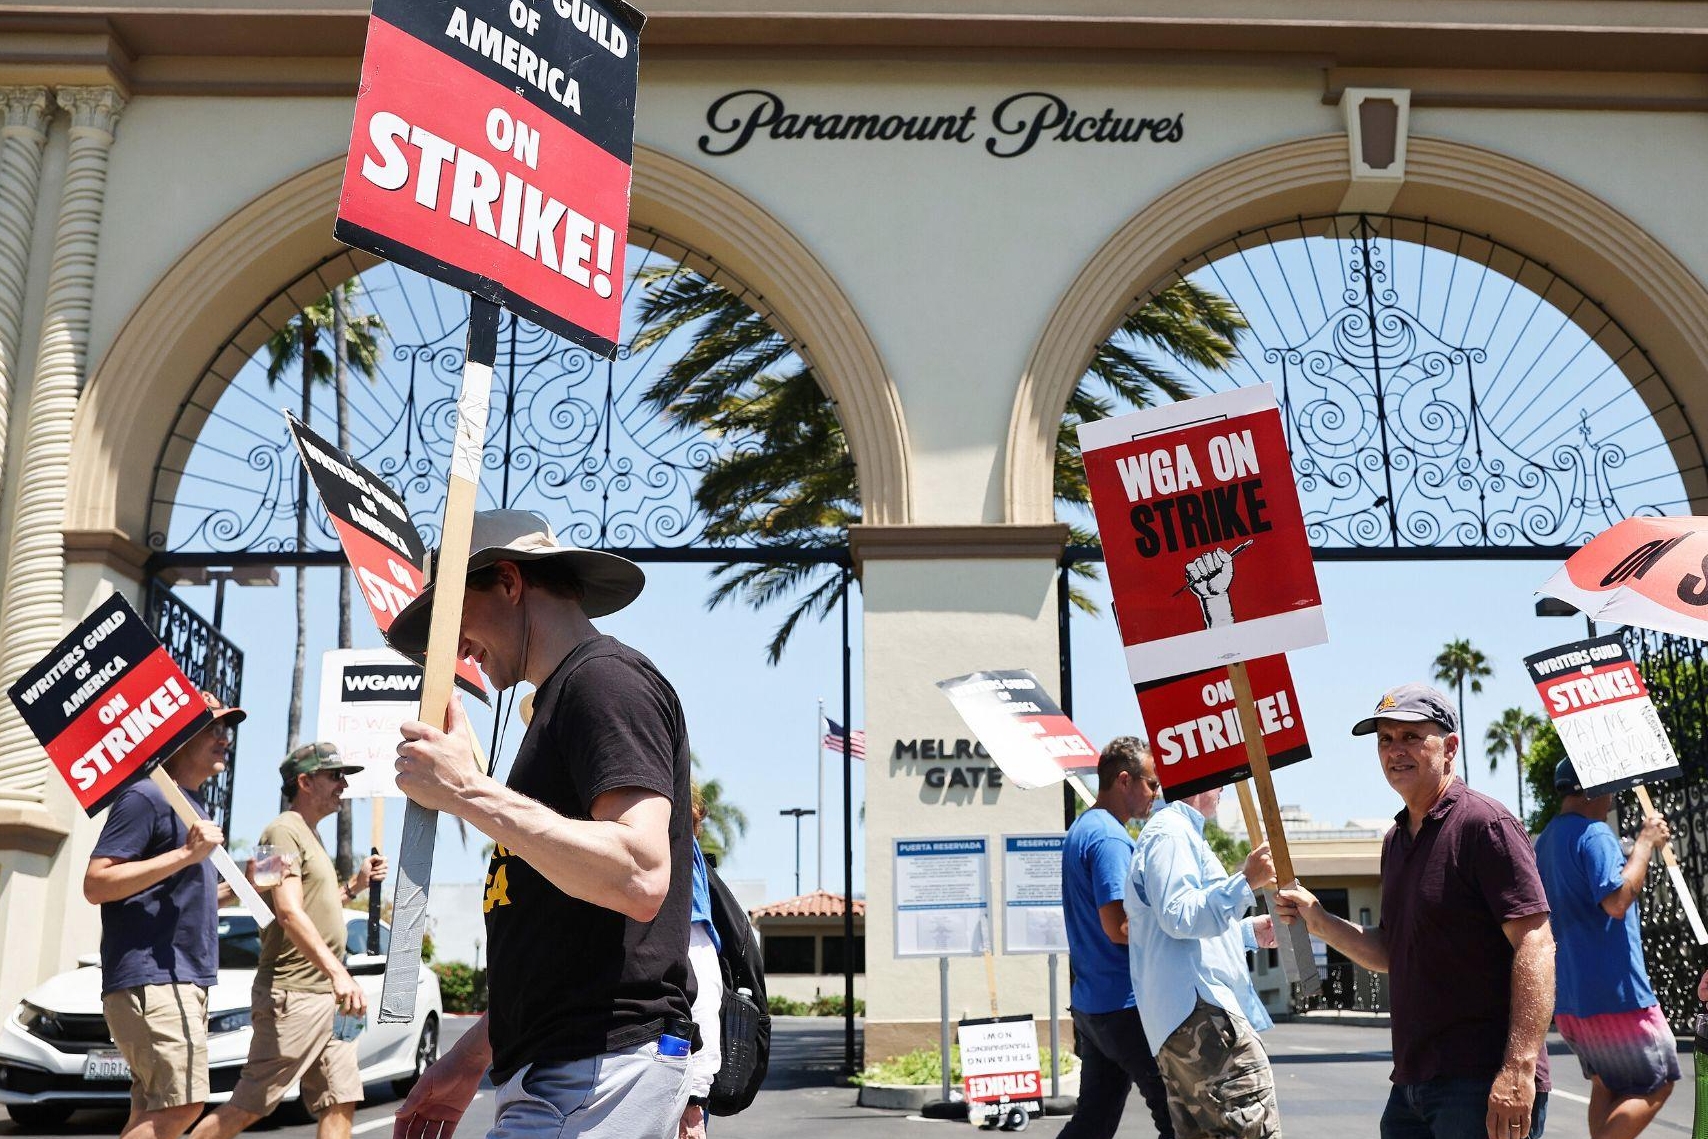 Attori in sciopero: la sede della Paramount Pictures